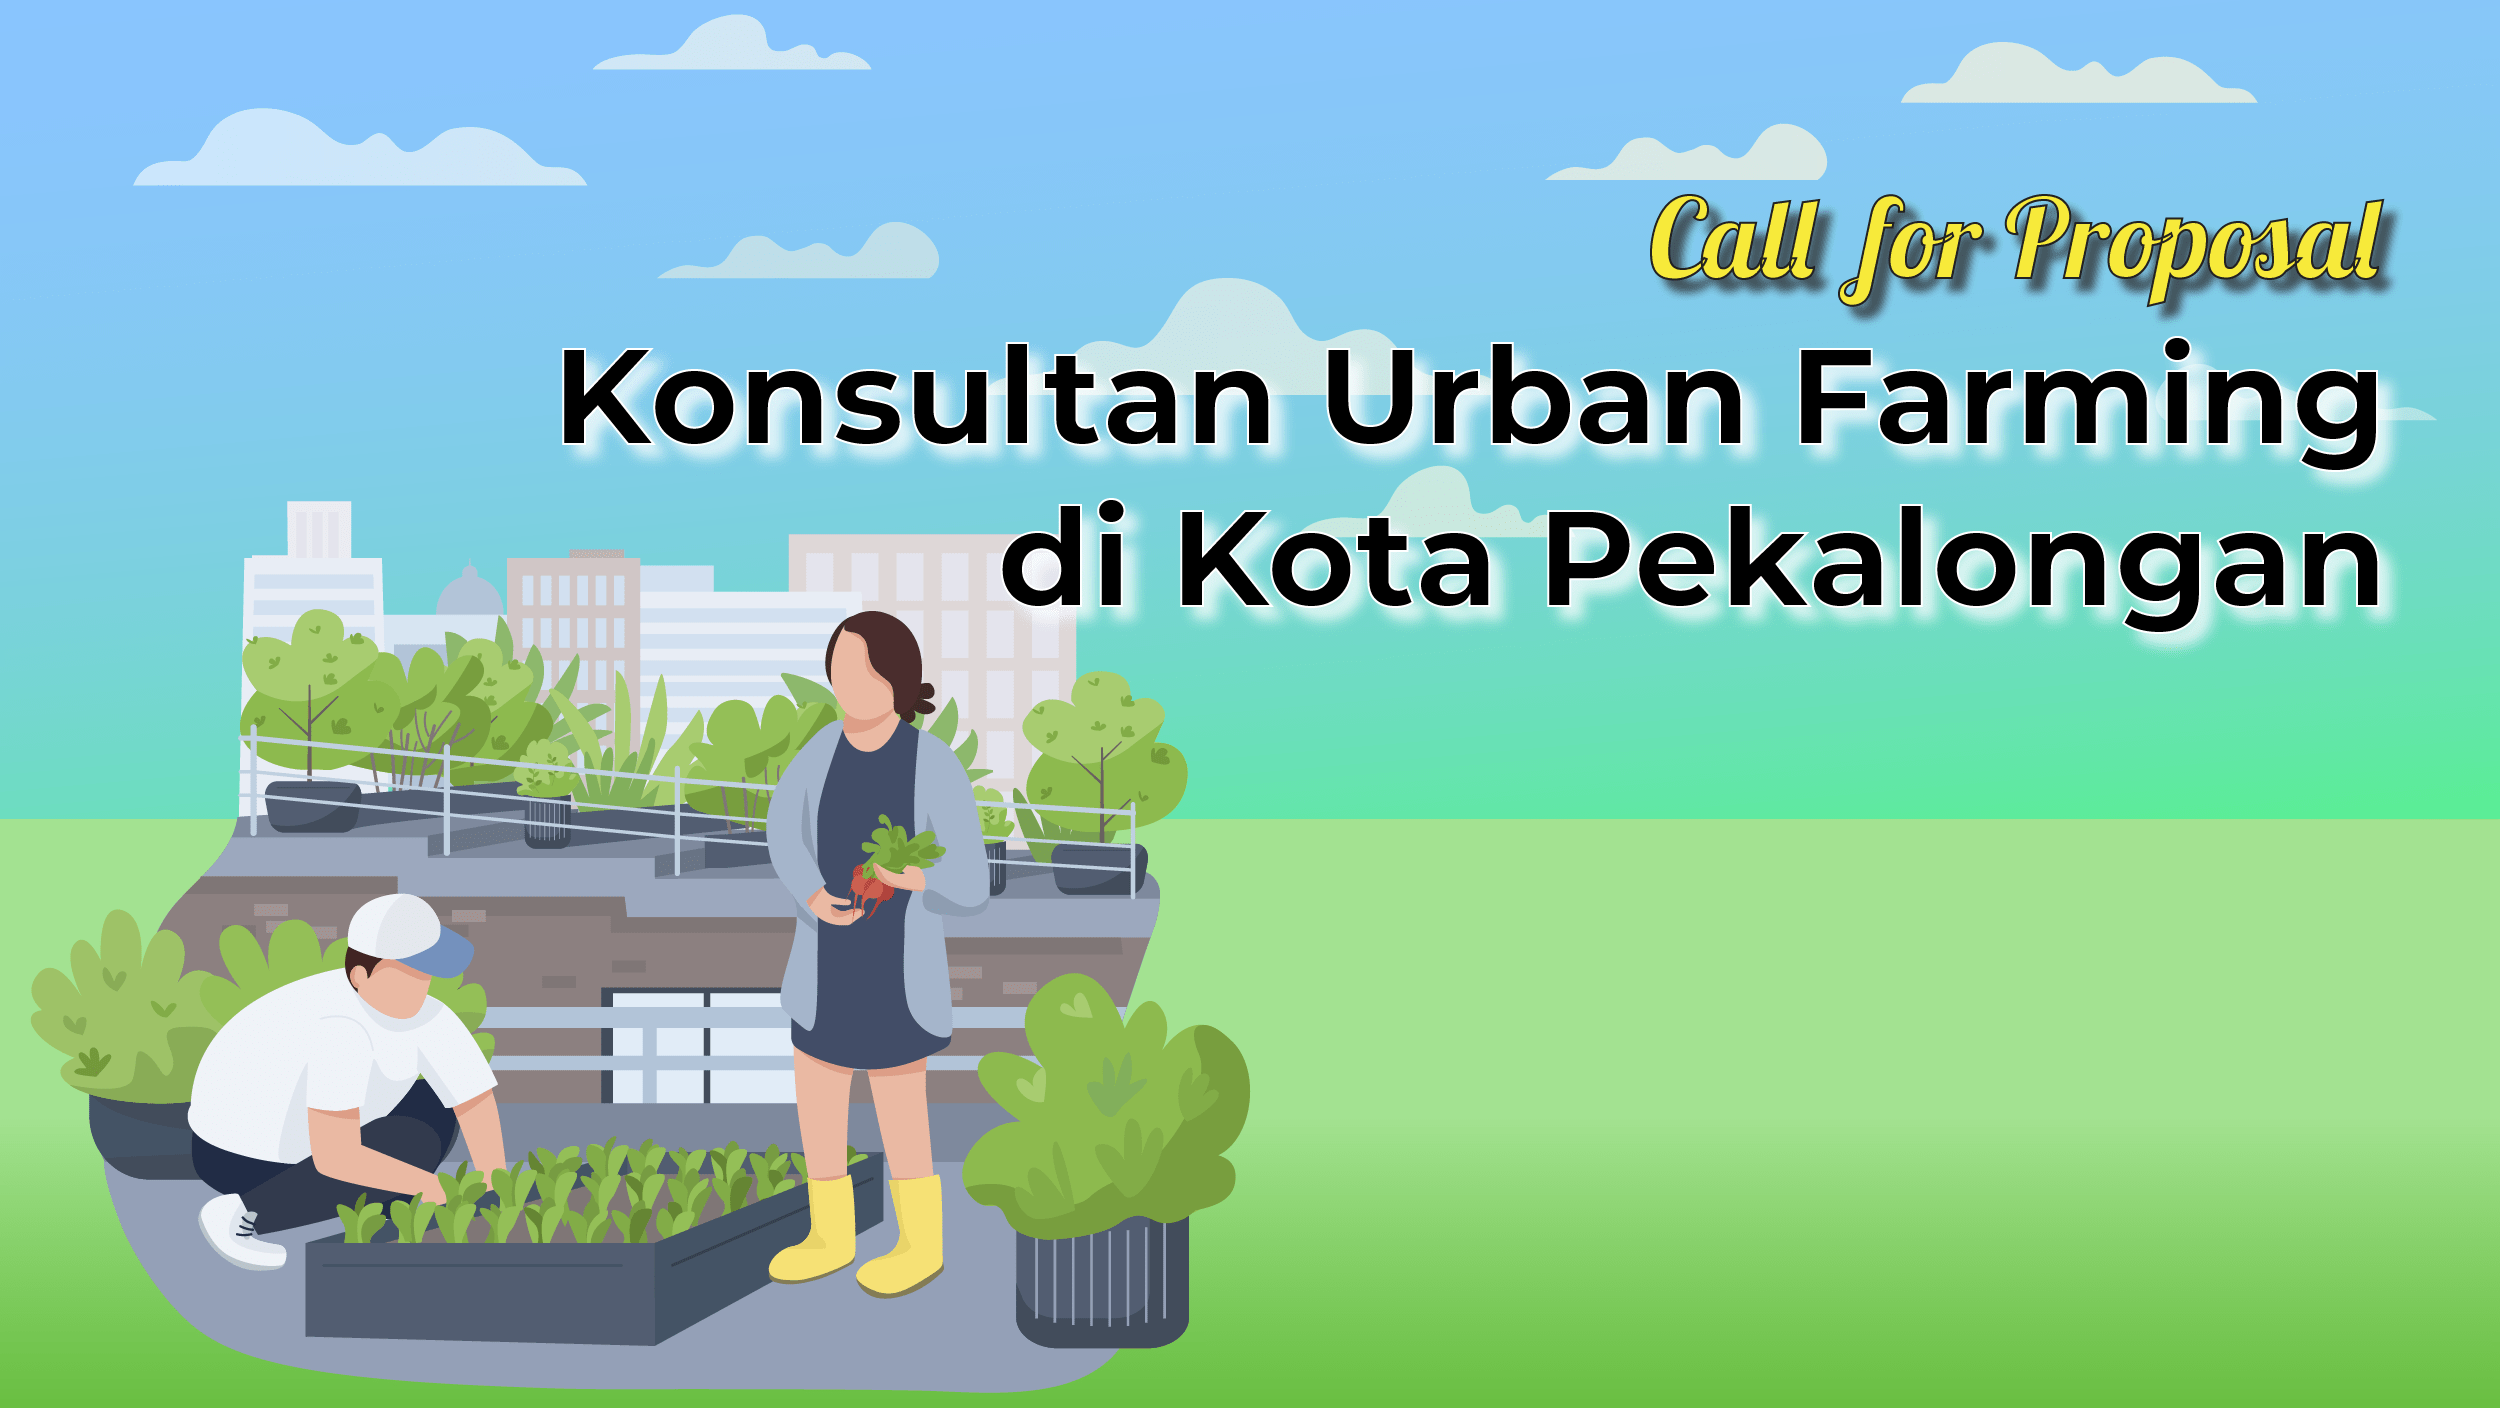 Call For Proposal: Konsultan Urban Farming Di Kota Pekalongan